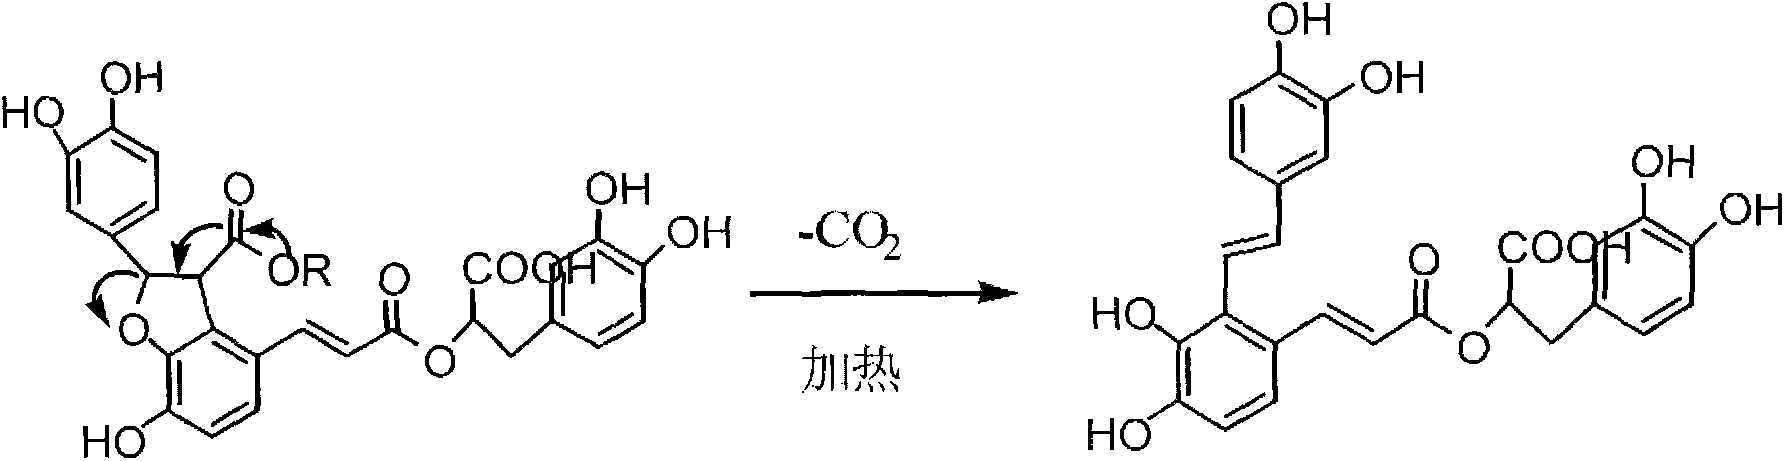 Method for preparing salvianolic acid A